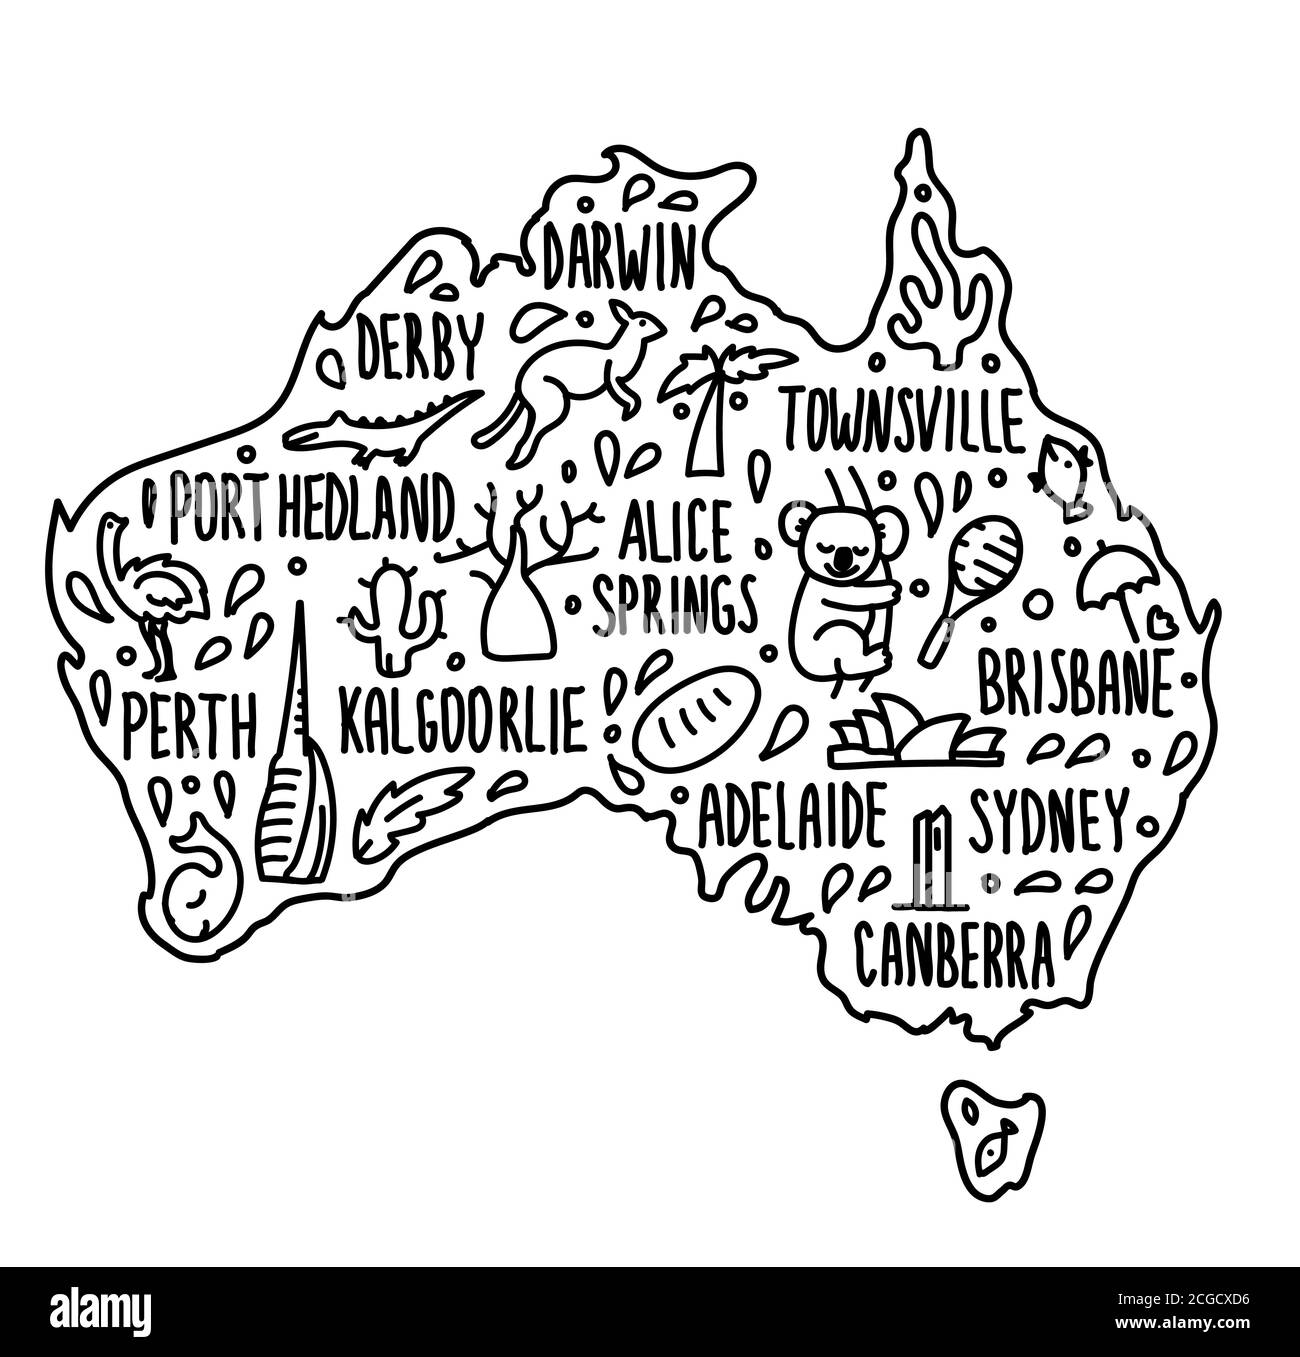 Australien Cartoon Reise Karte Vektor Illustration. Handgezeichnete Doodle australische Stadtnamen Schriftzug und Cartoon-Wahrzeichen, Touristenattraktionen Stock Vektor